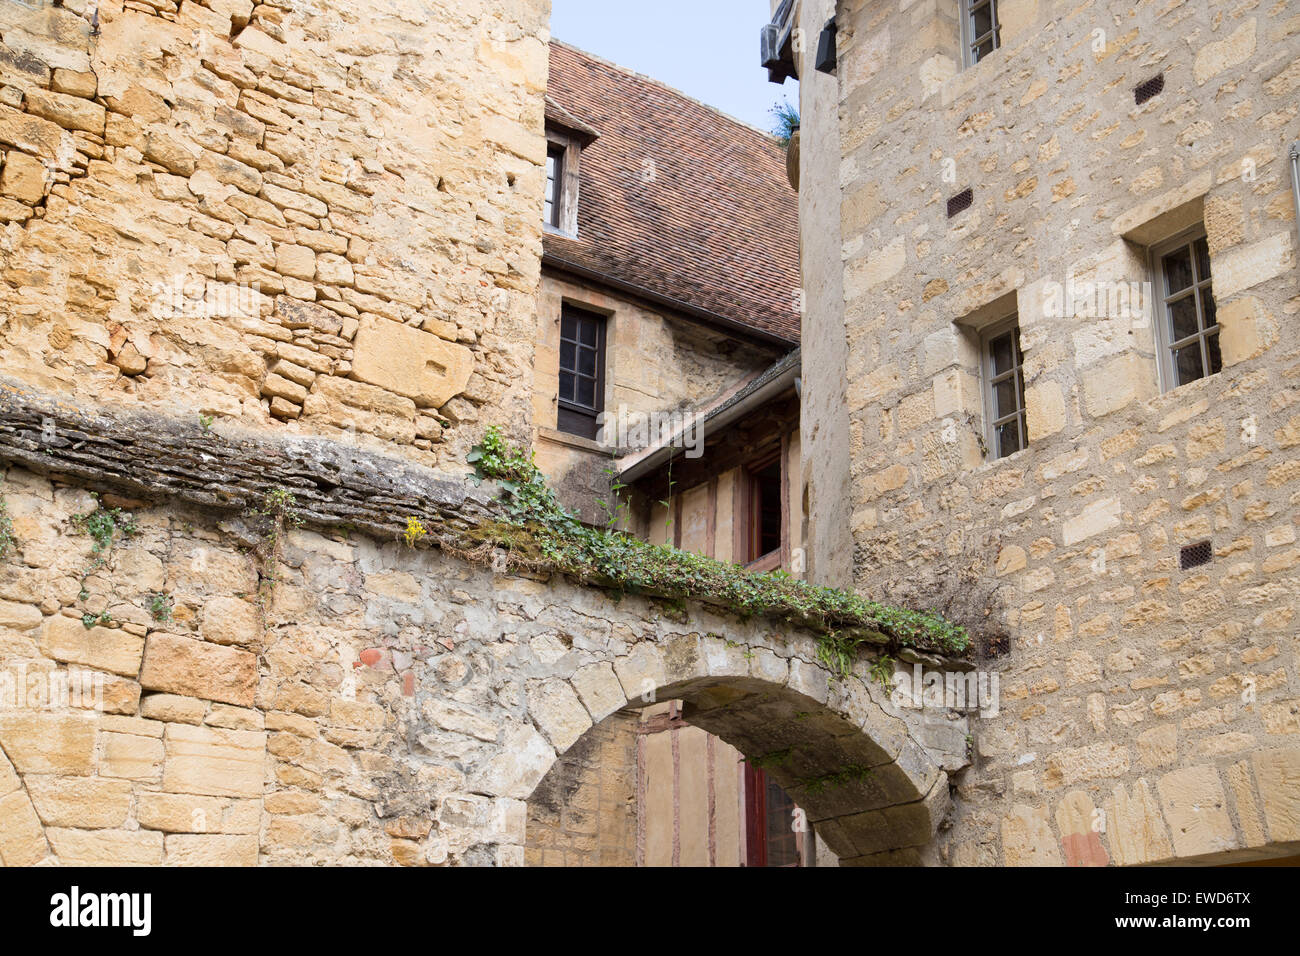 Stone buildings of Sarlat-la-Caneda, Dordogne, France Stock Photo